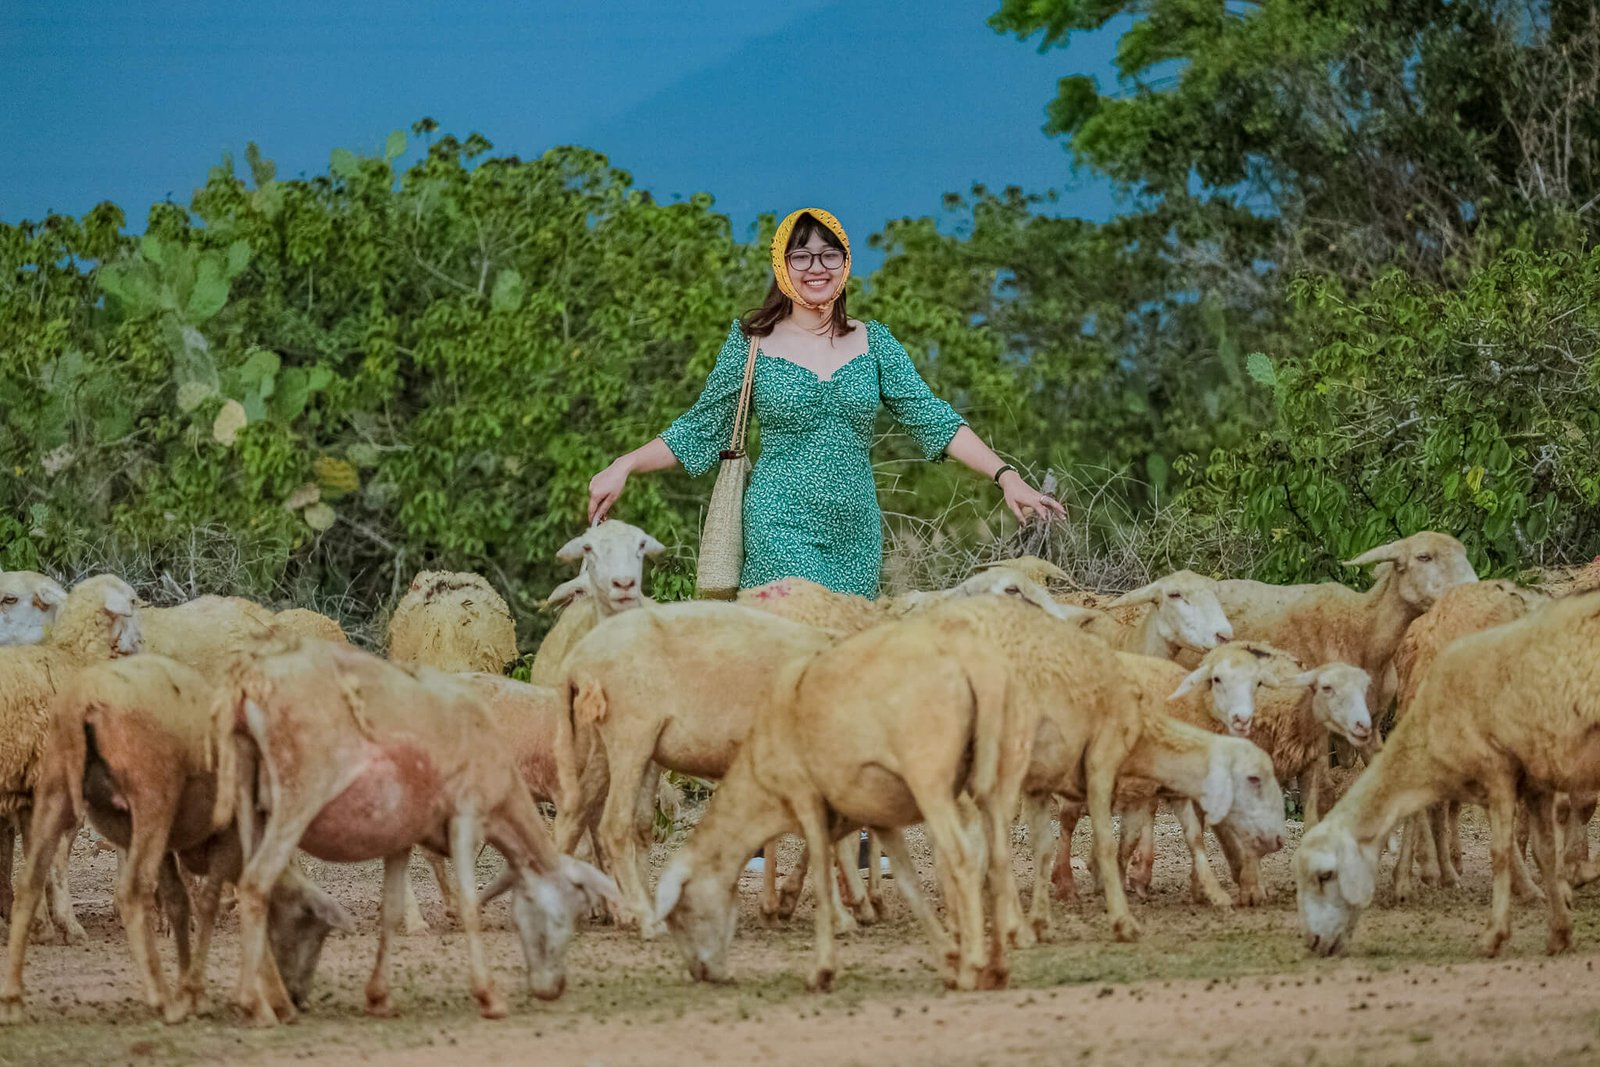 Đến thôn An Hòa bạn dể dàng bắt gặp những đàn cừu như thế này. Ảnh: Trung Văn Nguyễn